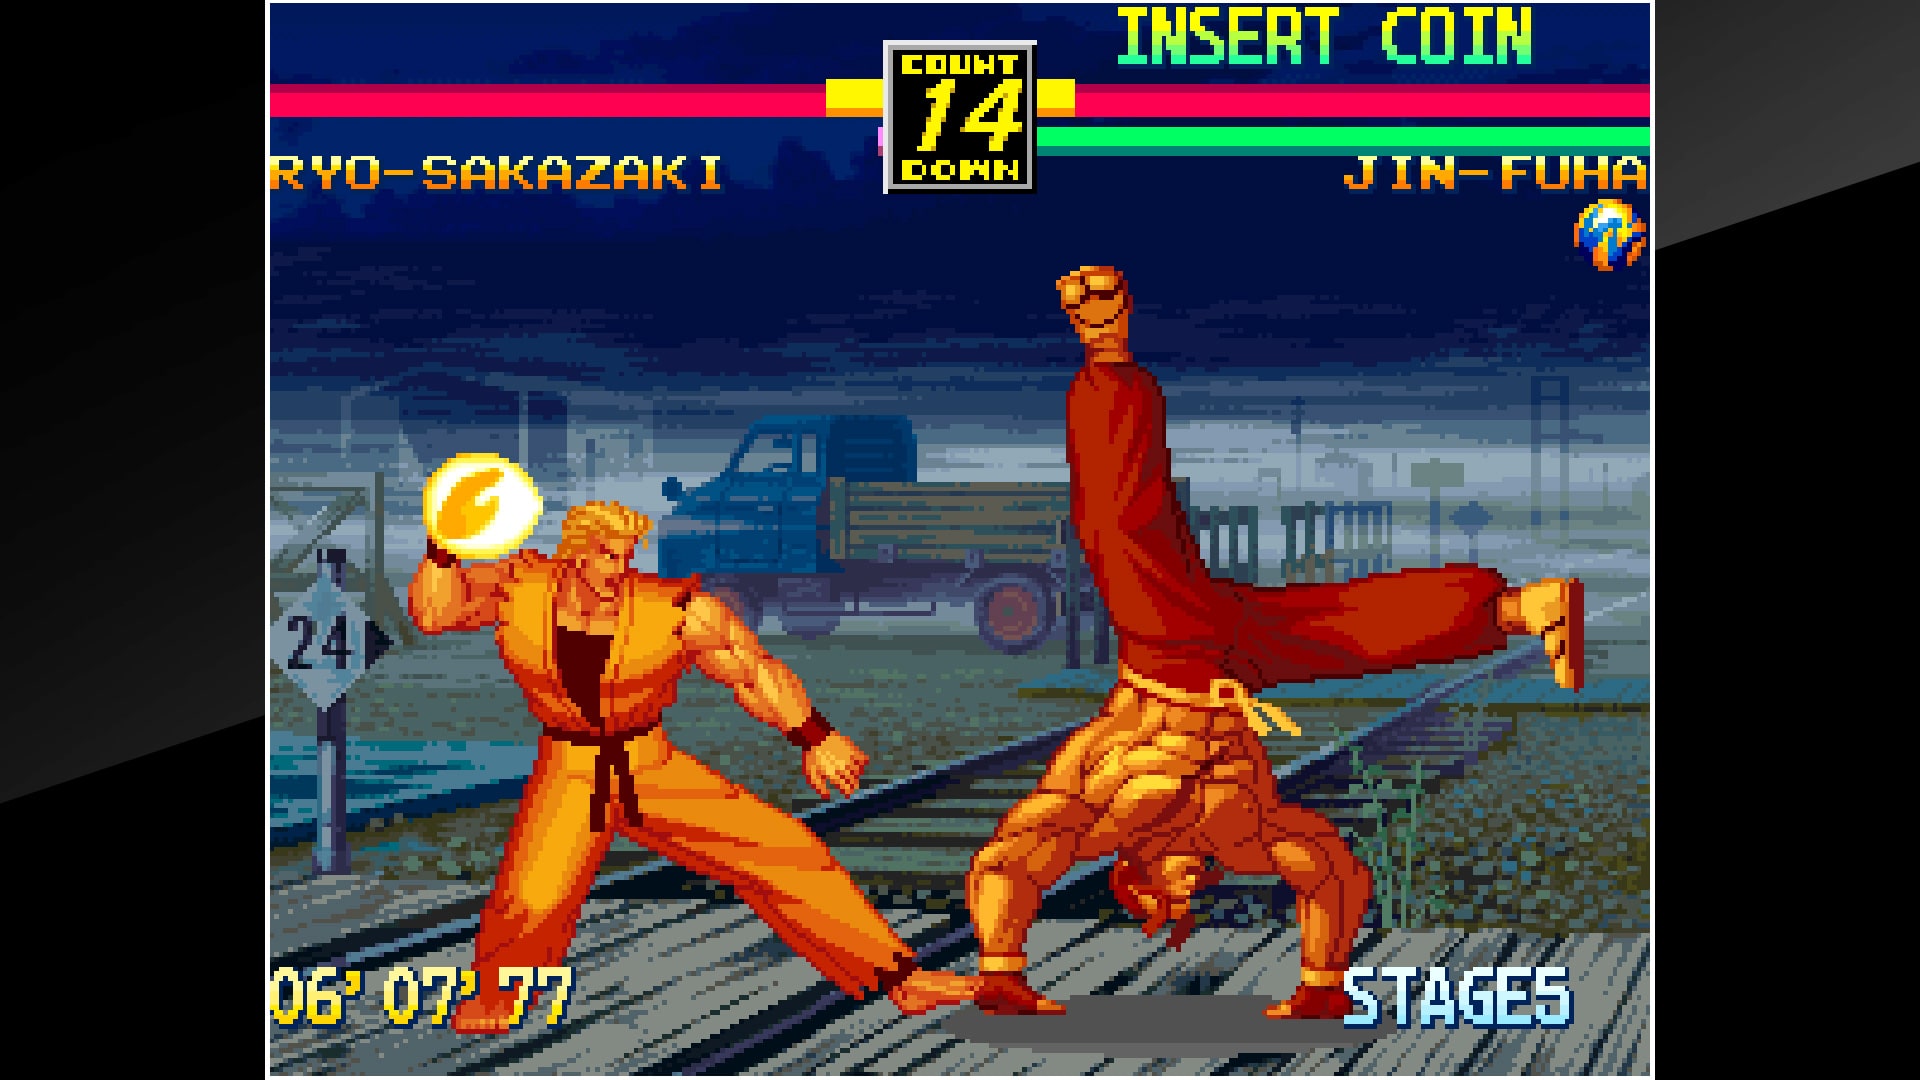 Art of Fighting Anthology (Clássico NeoGeo) Ps3 PSN Mídia Digital -  kalangoboygames